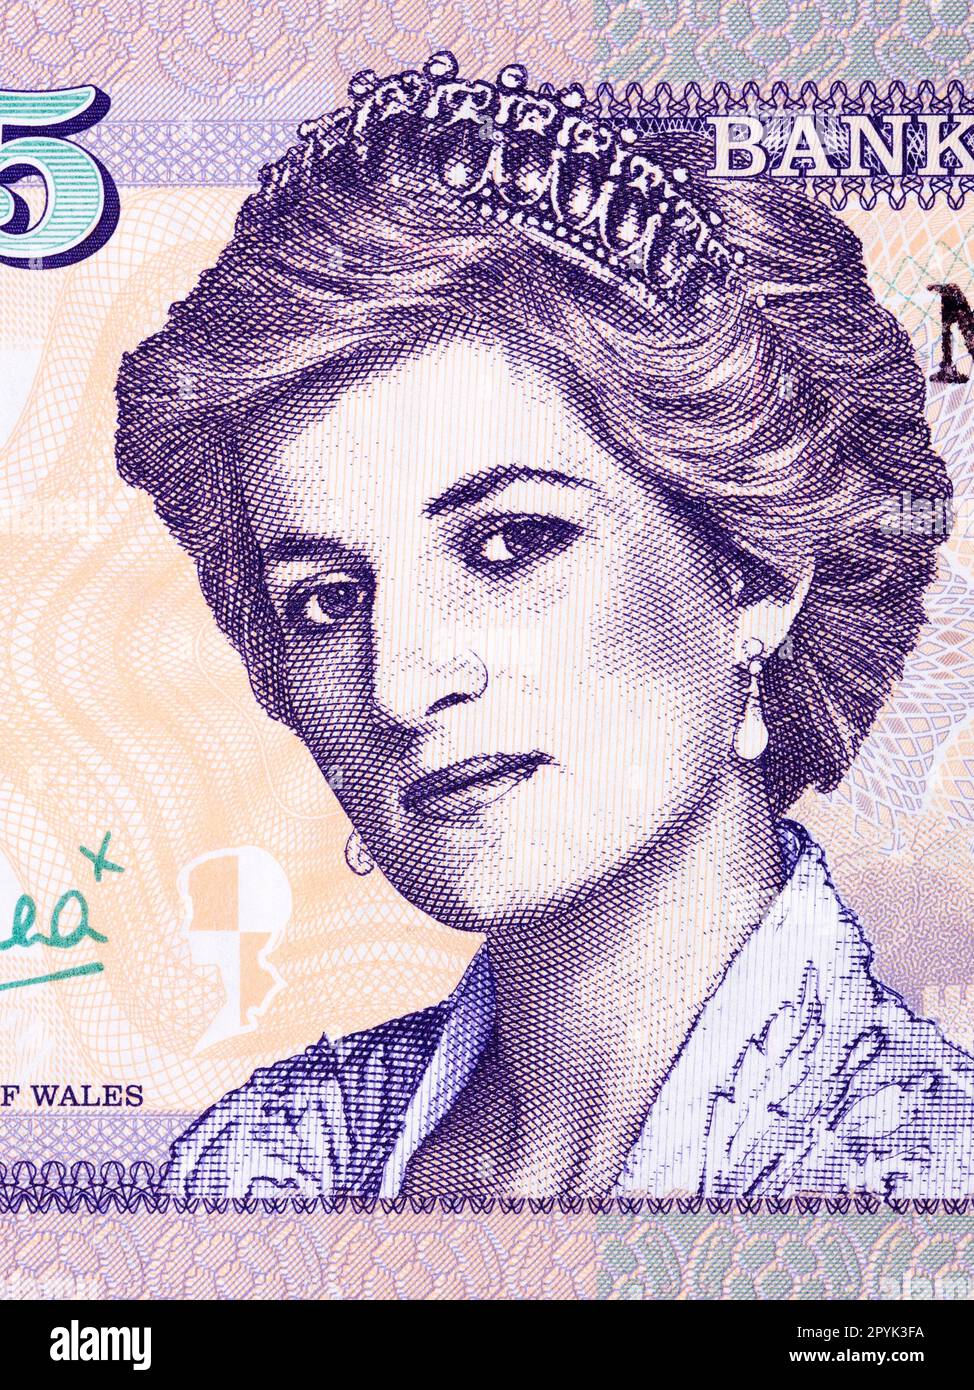 Prinzessin Diana, ein Porträt aus Waliser Geld Stockfoto